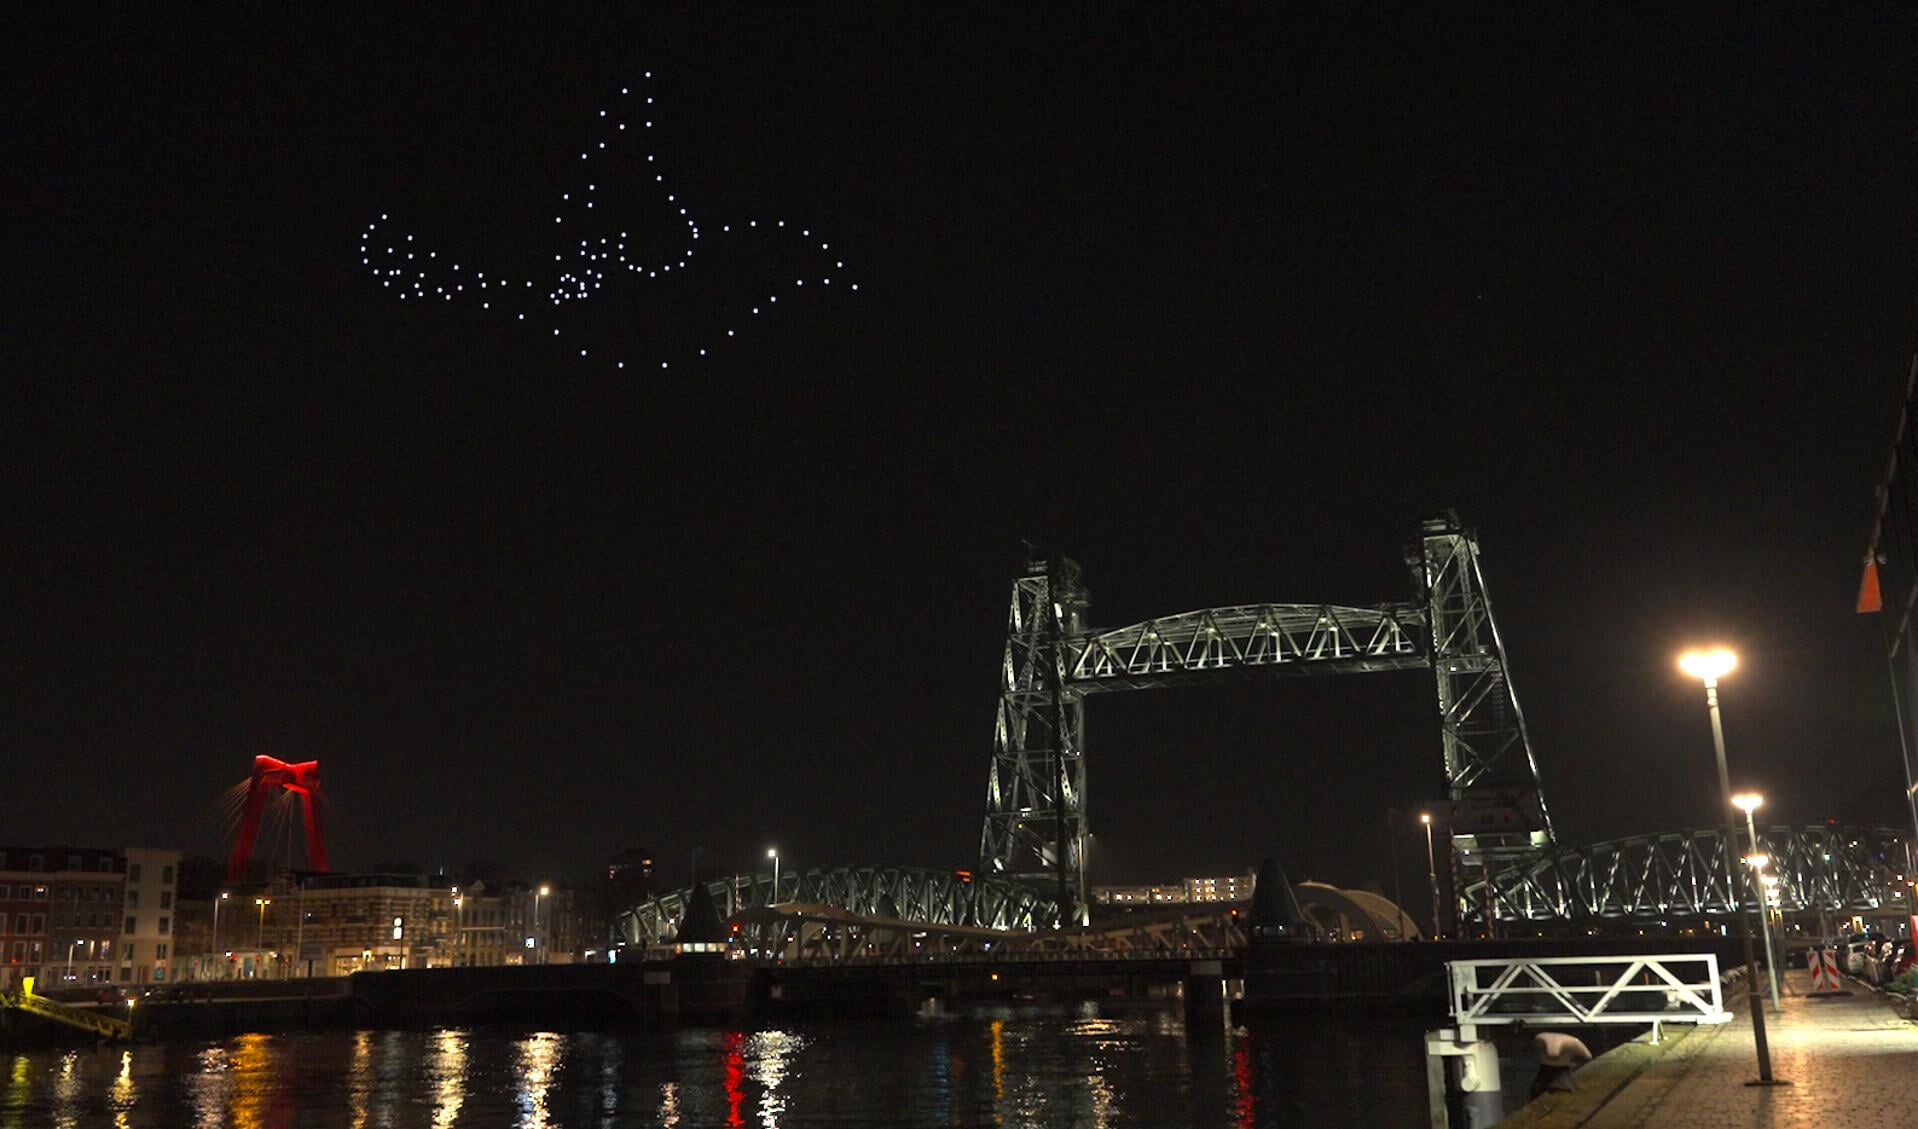 De drone show werd de afgelopen dagen in het geheim middenin de nacht opgenomen, bij de iconische brug De Hef in Rotterdam. Foto's: pr